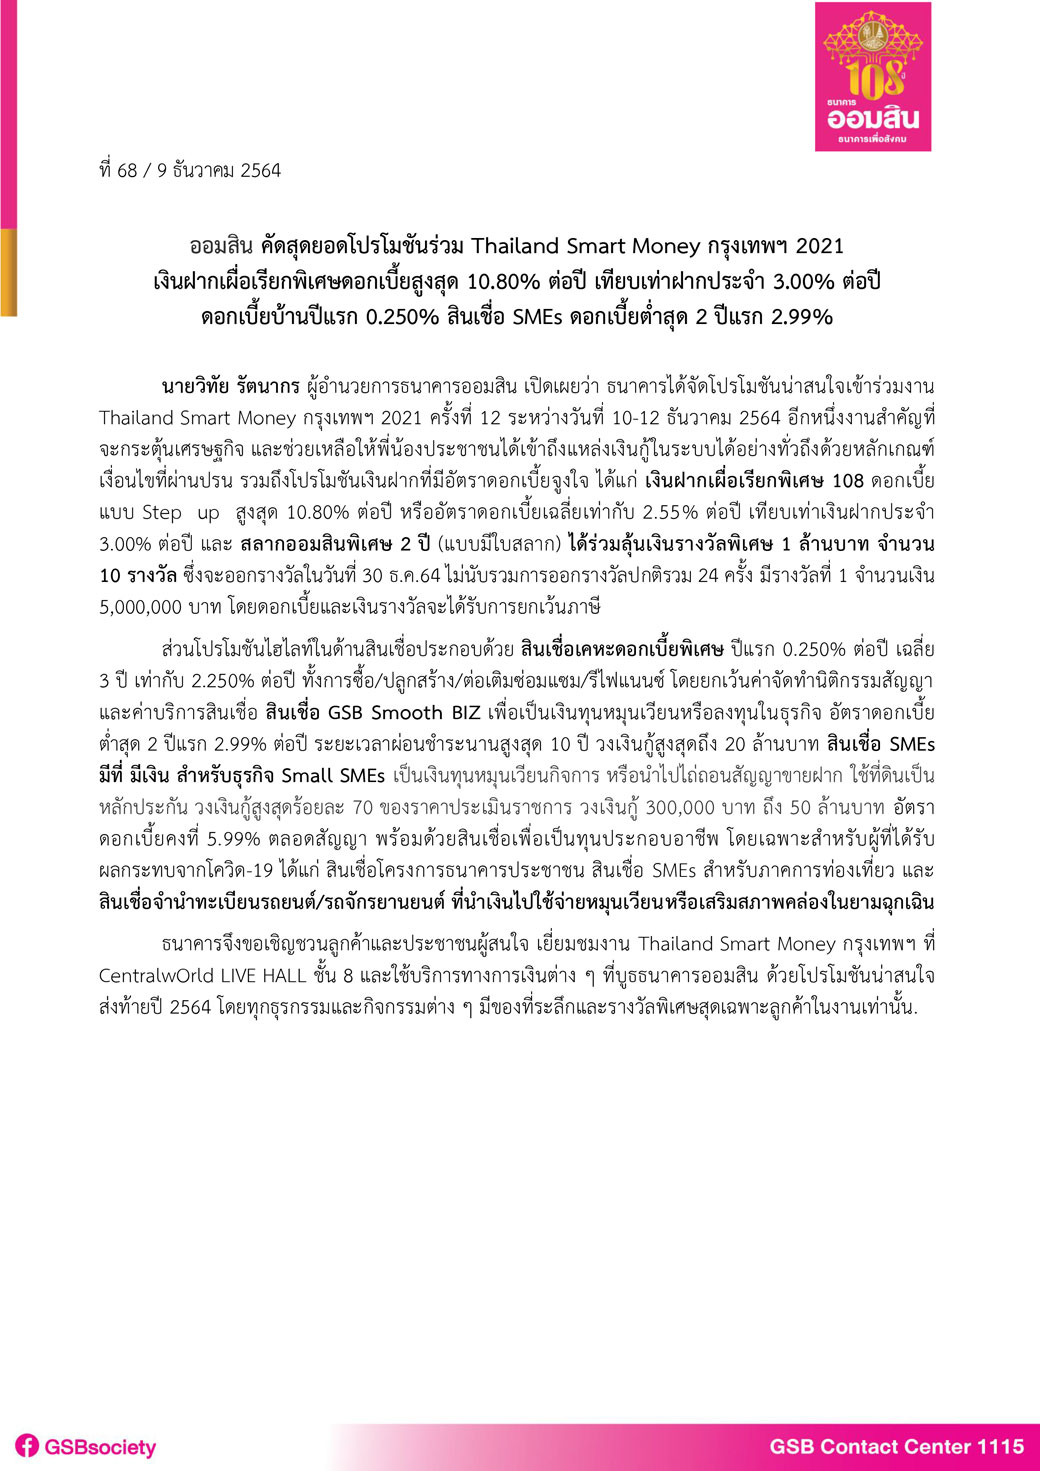 ฉบับที่ 68 (thailand Smart Money กรุงเทพฯ ครั้งที่ 12) Final